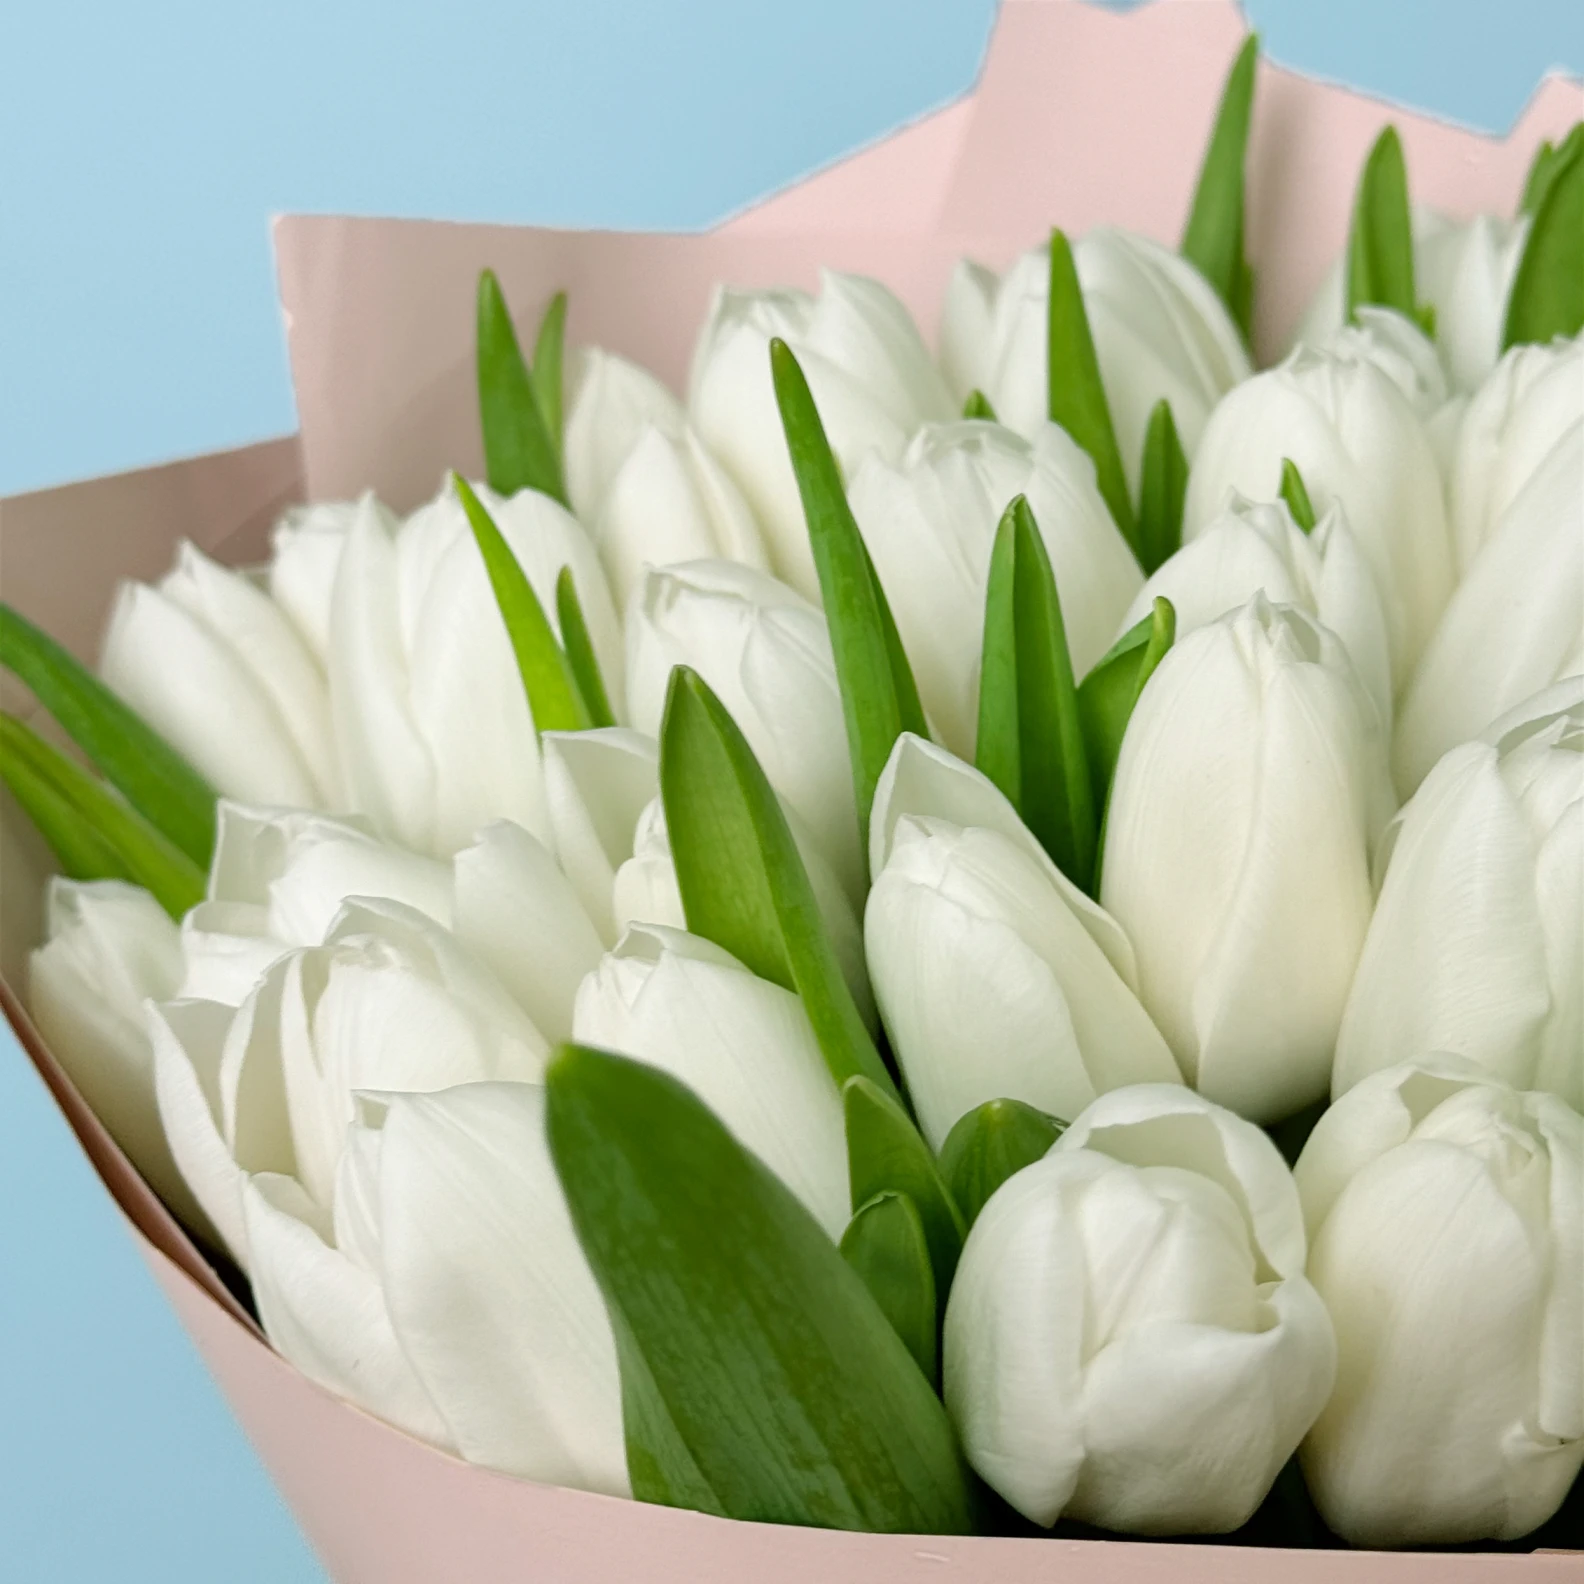 40 White Tulips - image №3